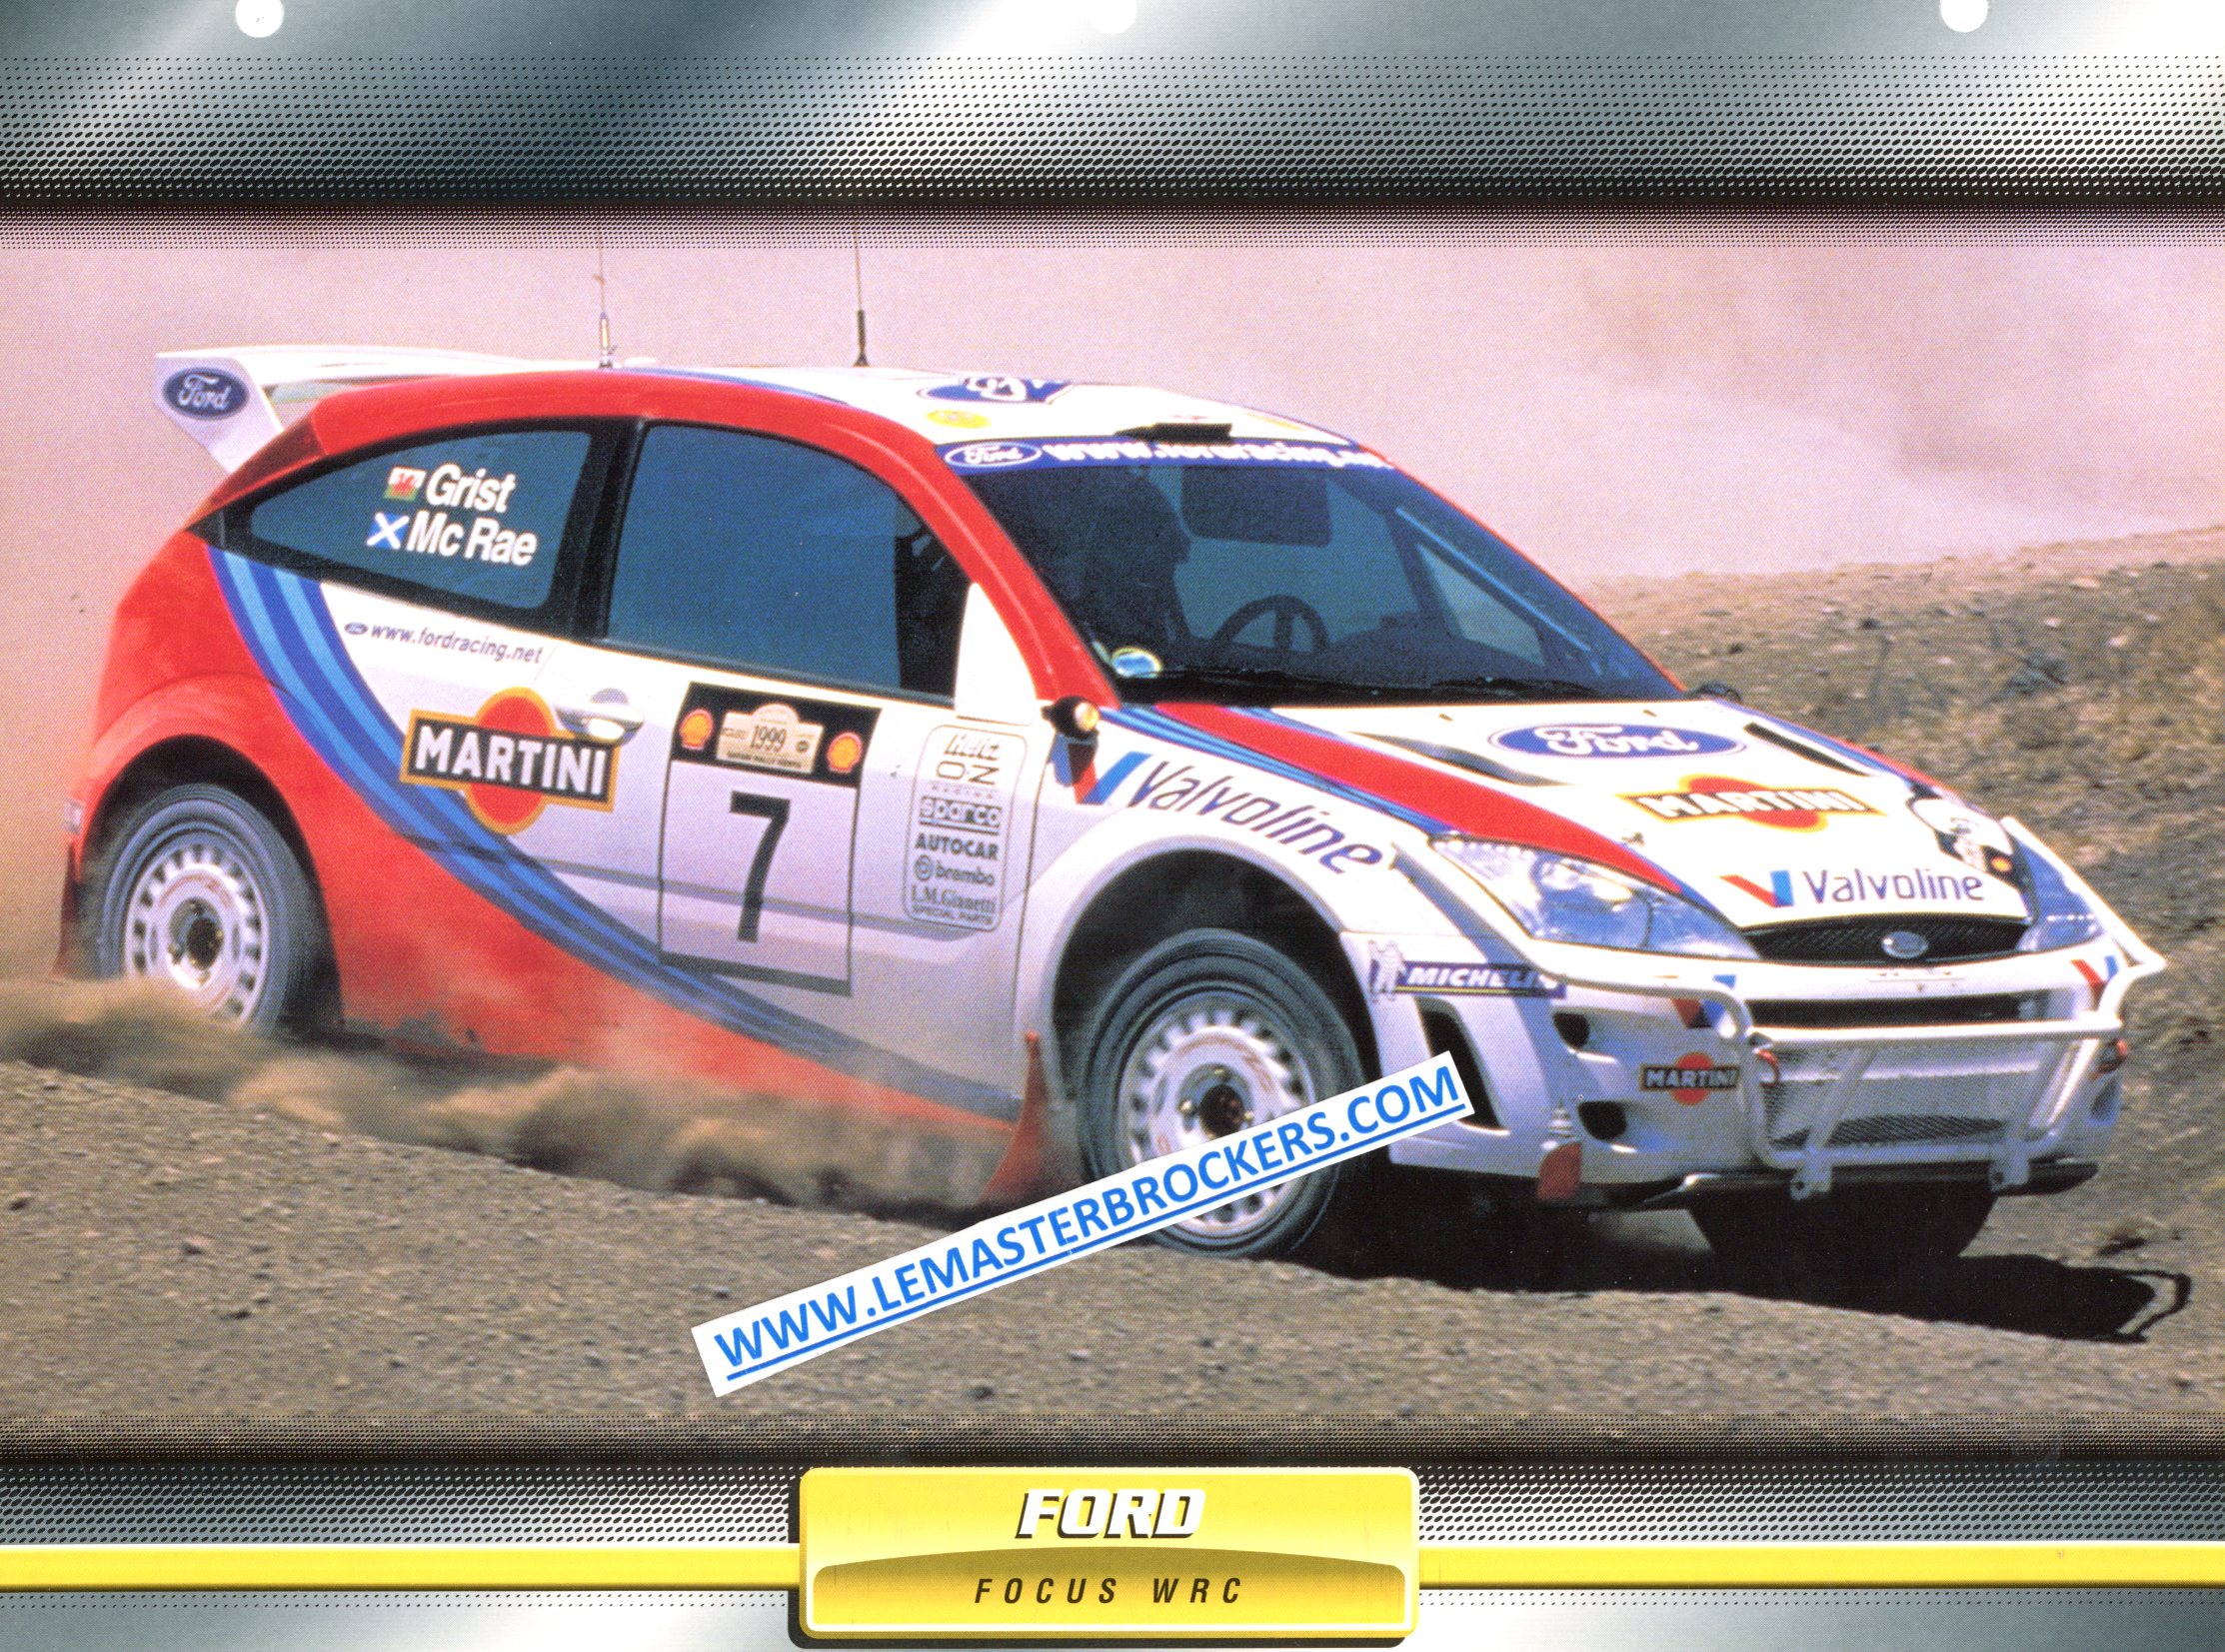 FORD FOCUS WRC 1999 FICHE AUTO LITTÉRATURE AUTOMOBILE